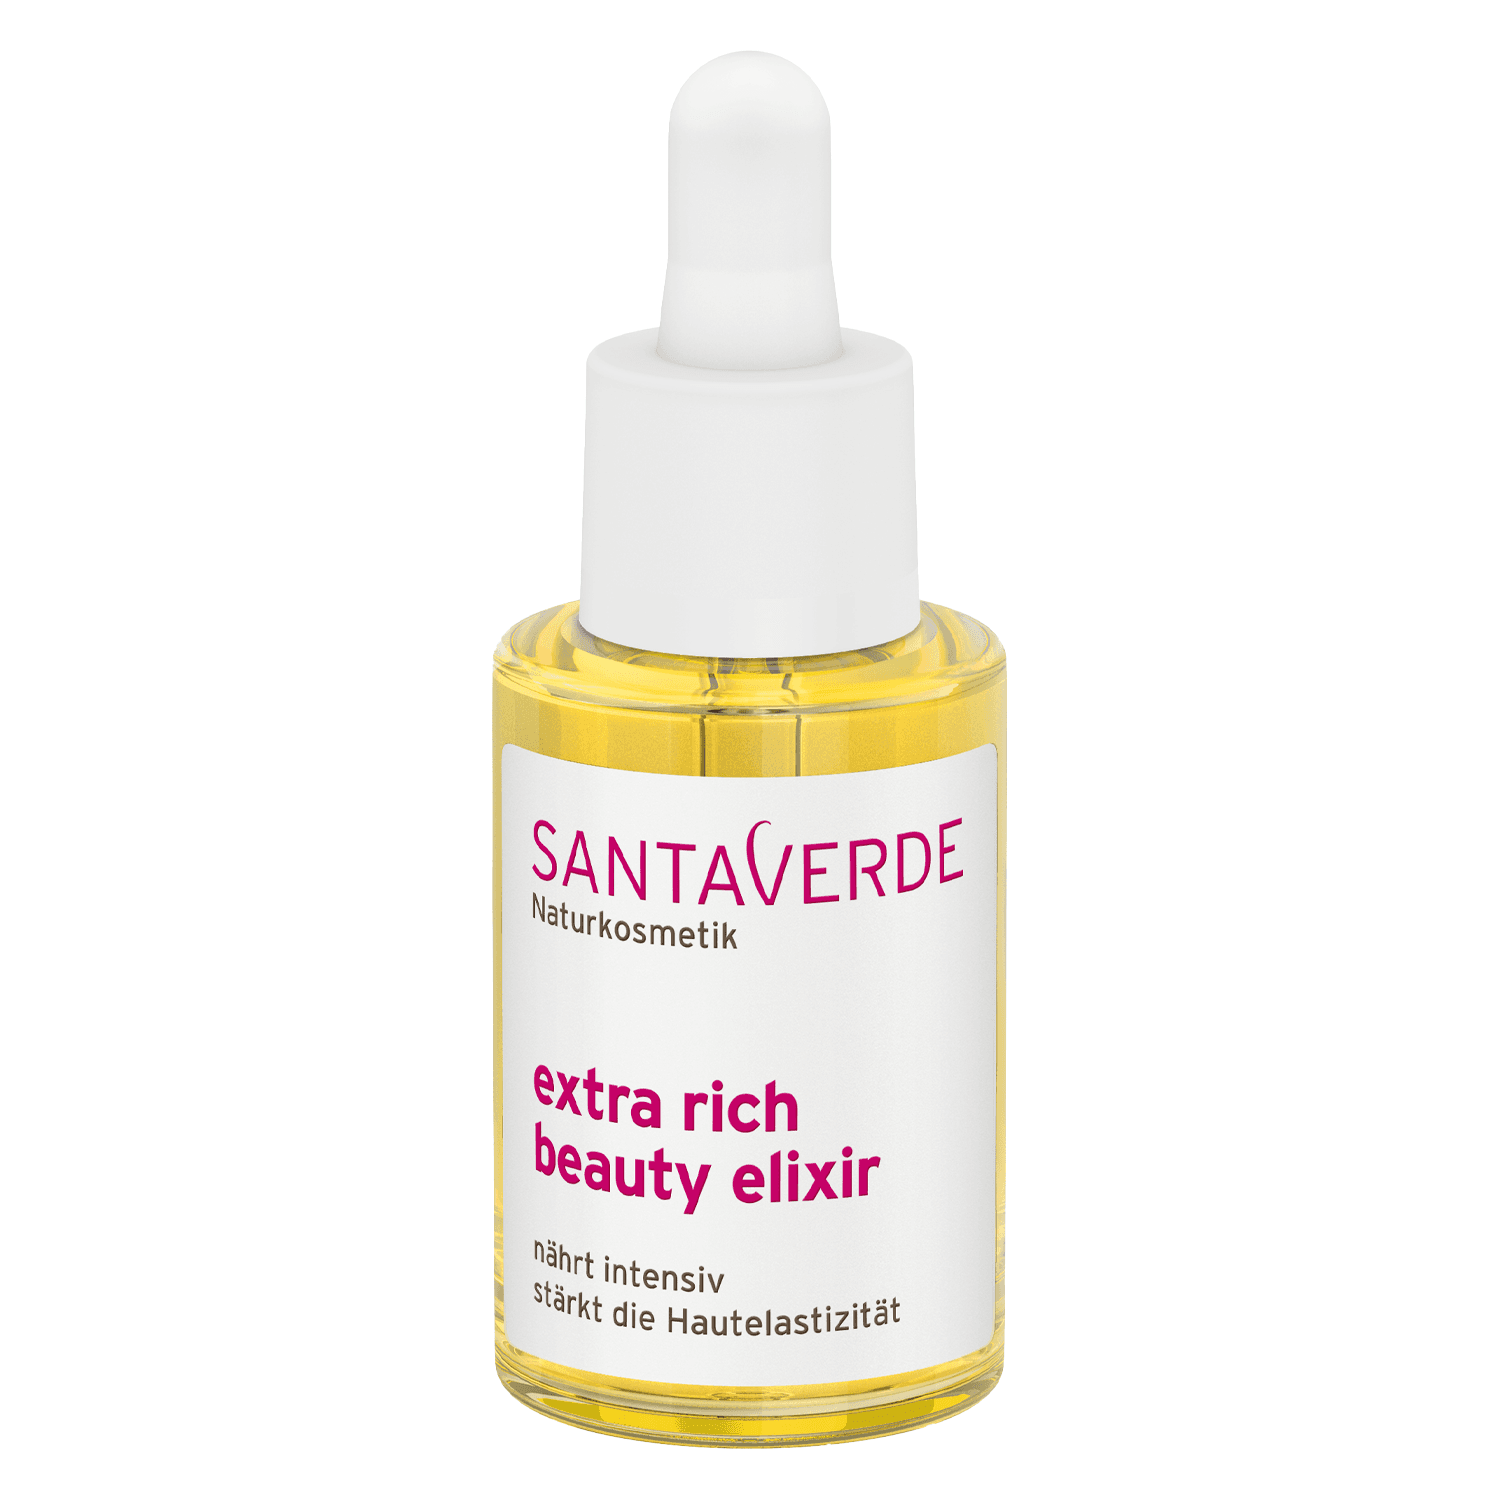 SANTAVERDE - extra rich beauty elixir